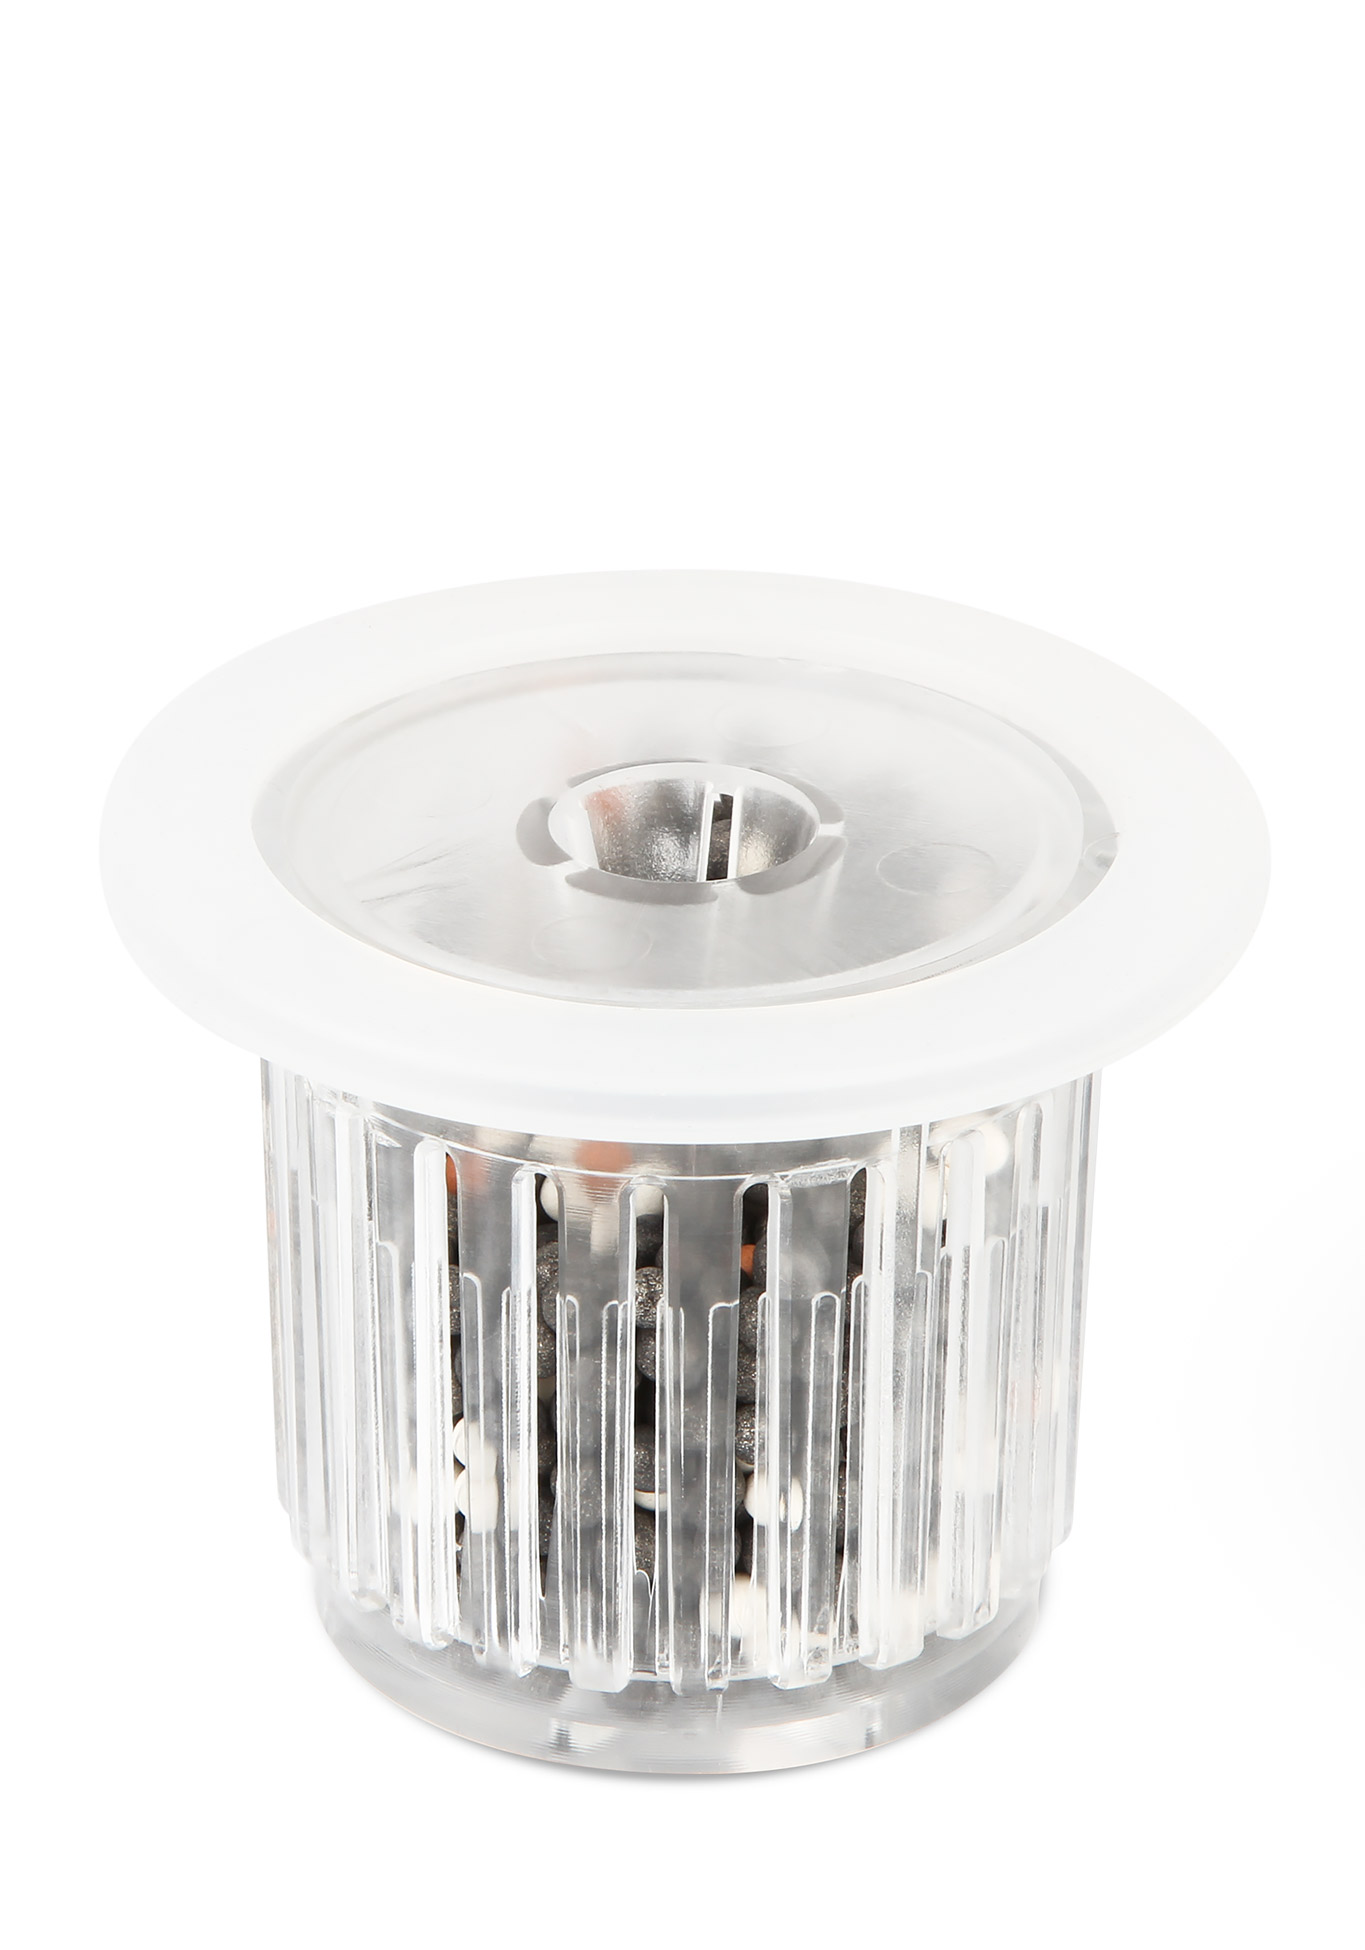 Фильтр для ионизатора воды Redox tetra filterjet 600 внутренний фильтр для аквариумов объемом 120–170л